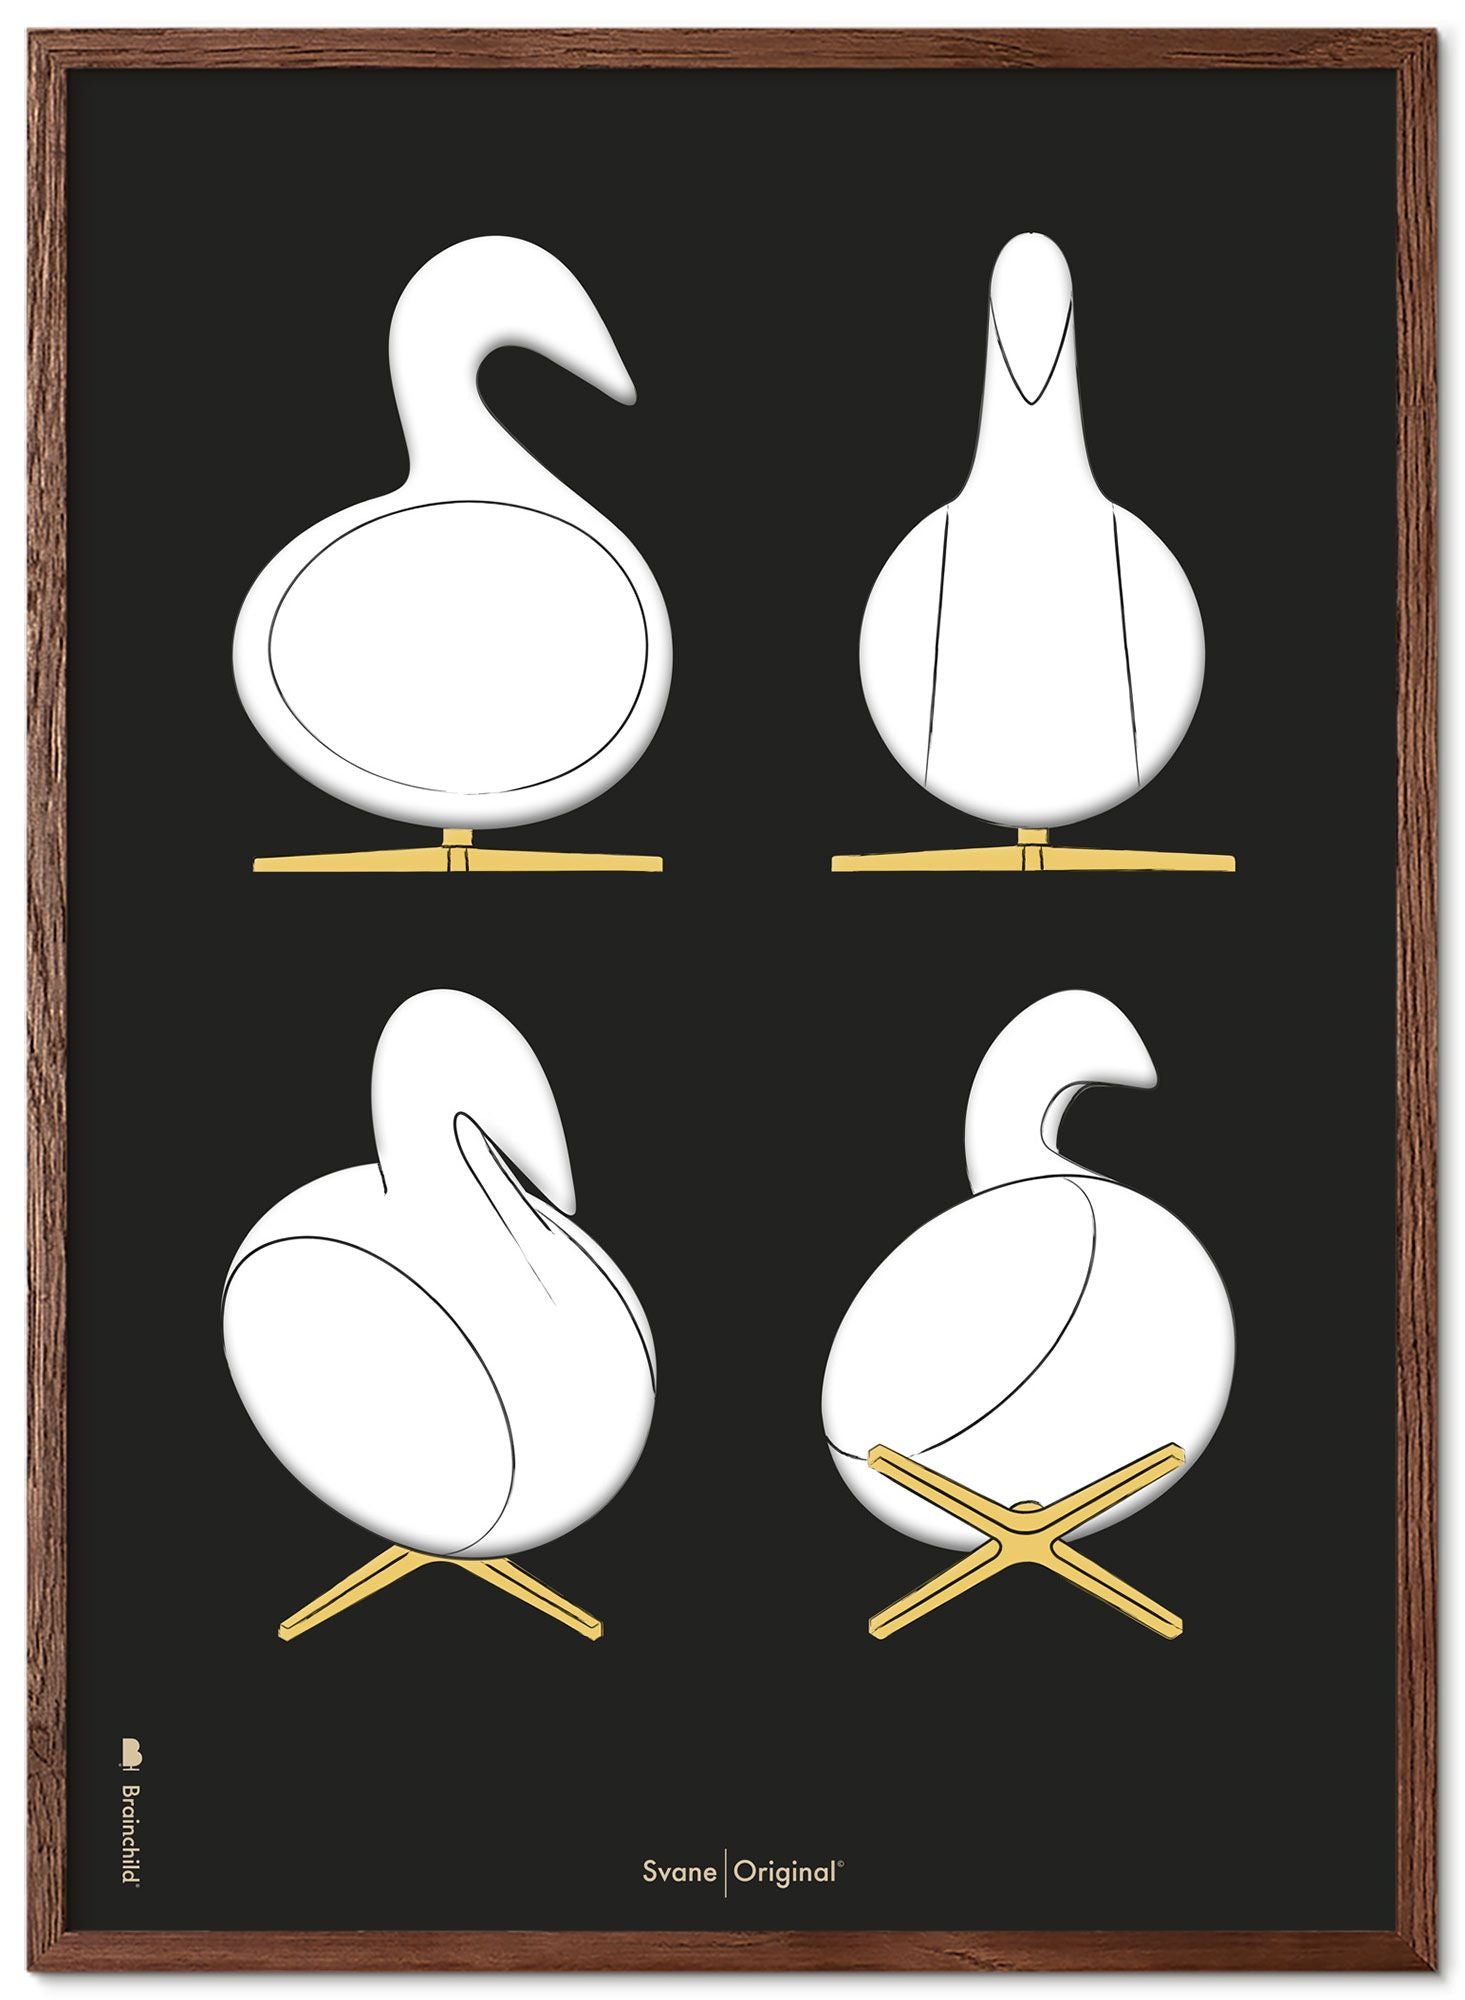 Brainchild Swan Design Sketches Poster Frame lavet af Dark Wood 30x40 cm, sort baggrund